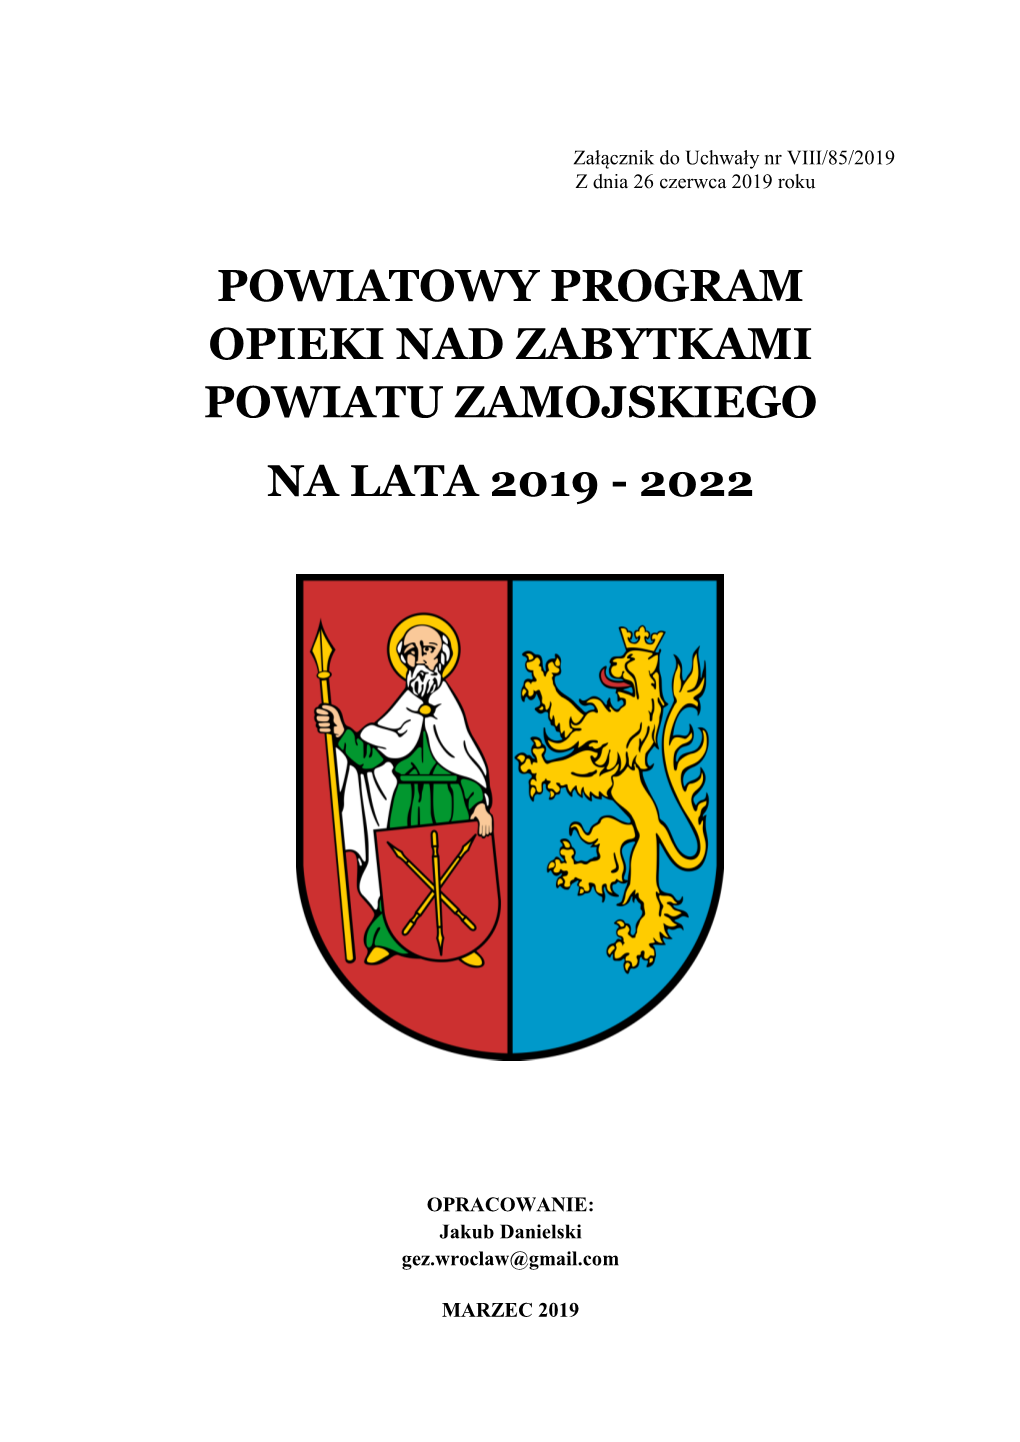 Powiatowy Program Opieki Nad Zabytkami Powiatu Zamojskiego Na Lata 2019 - 2022